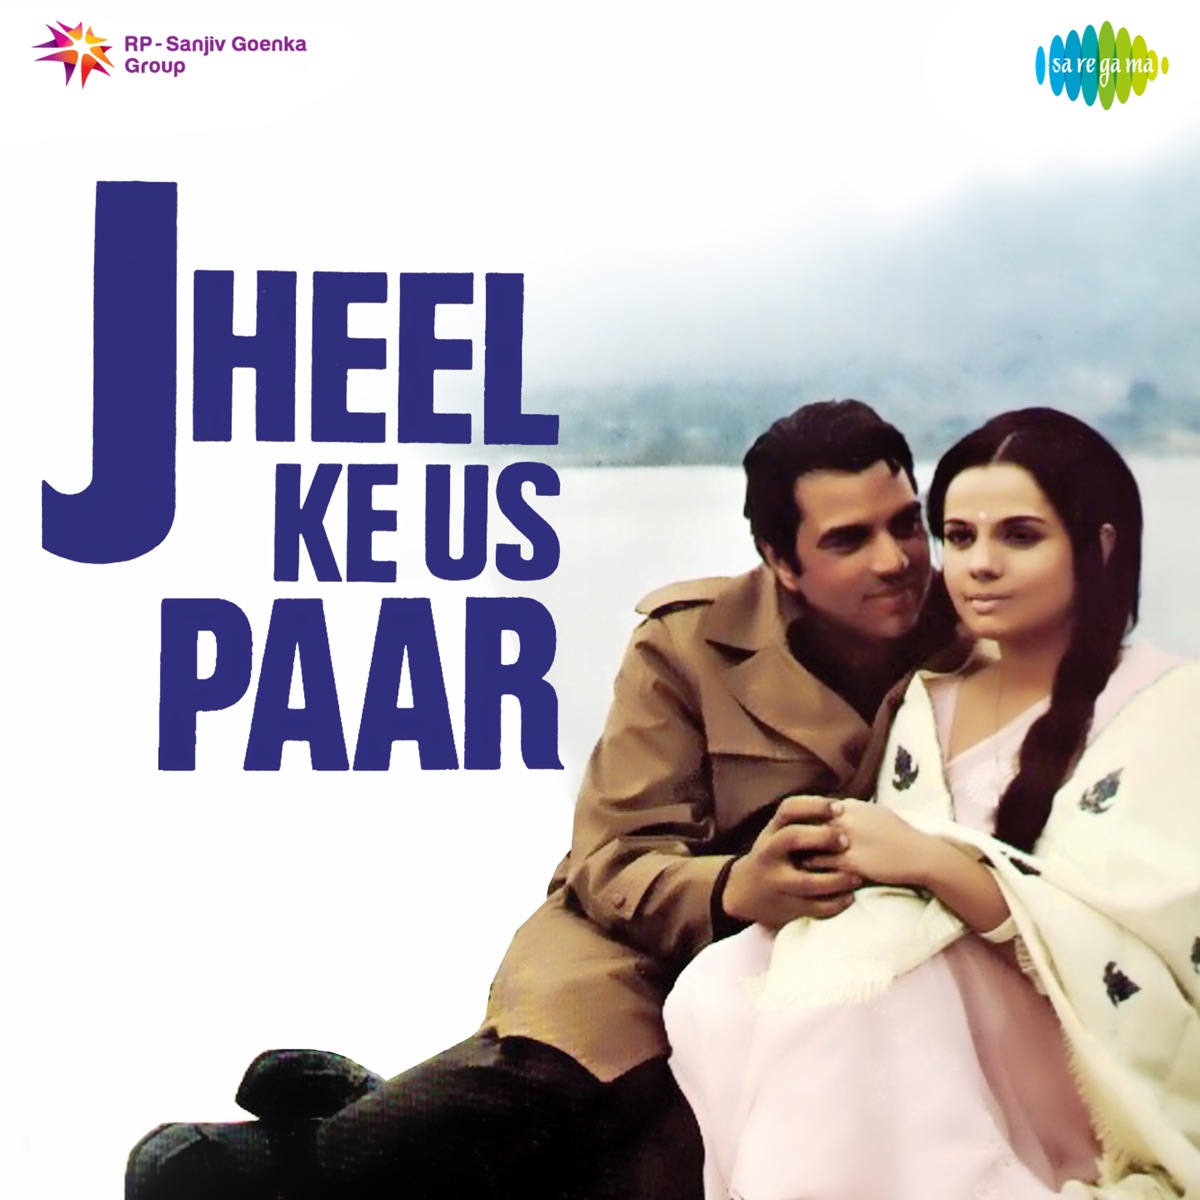 Jheel Ke Us Paar (Original Motion Picture Soundtrack) - Album by R.D.  Burman - Apple Music